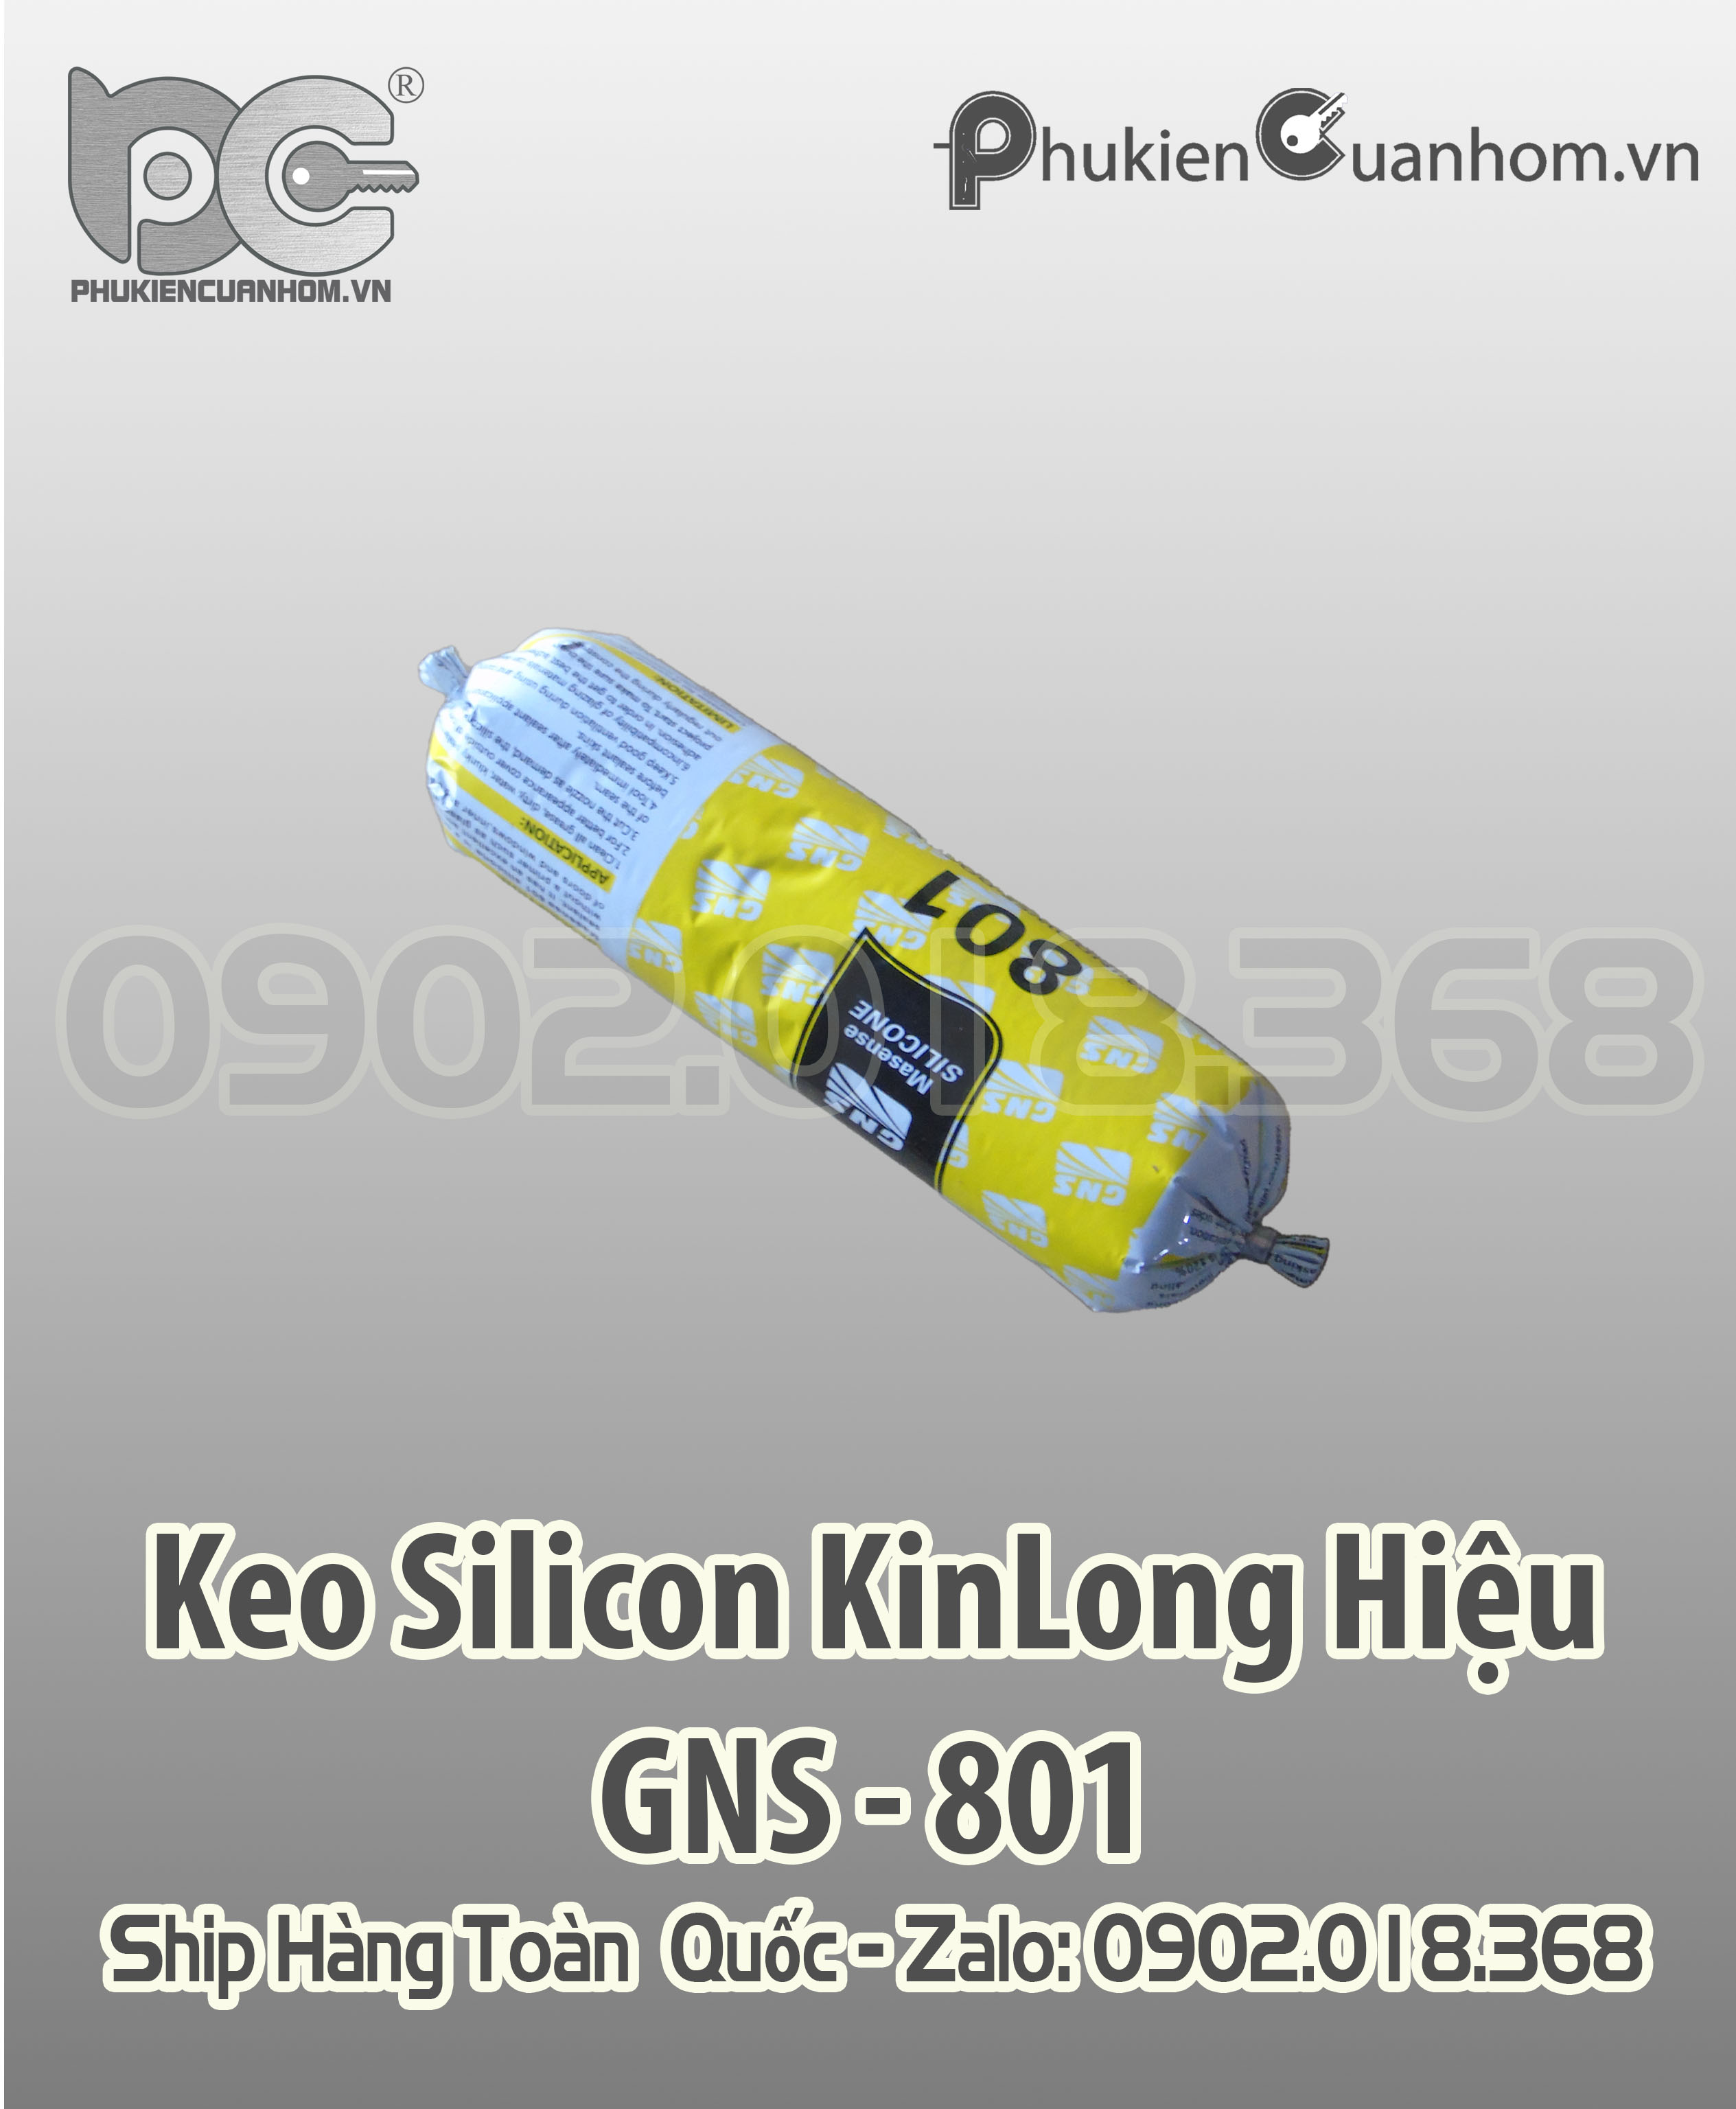 Keo silicone xúc xích KinLong hiệu GNS 801